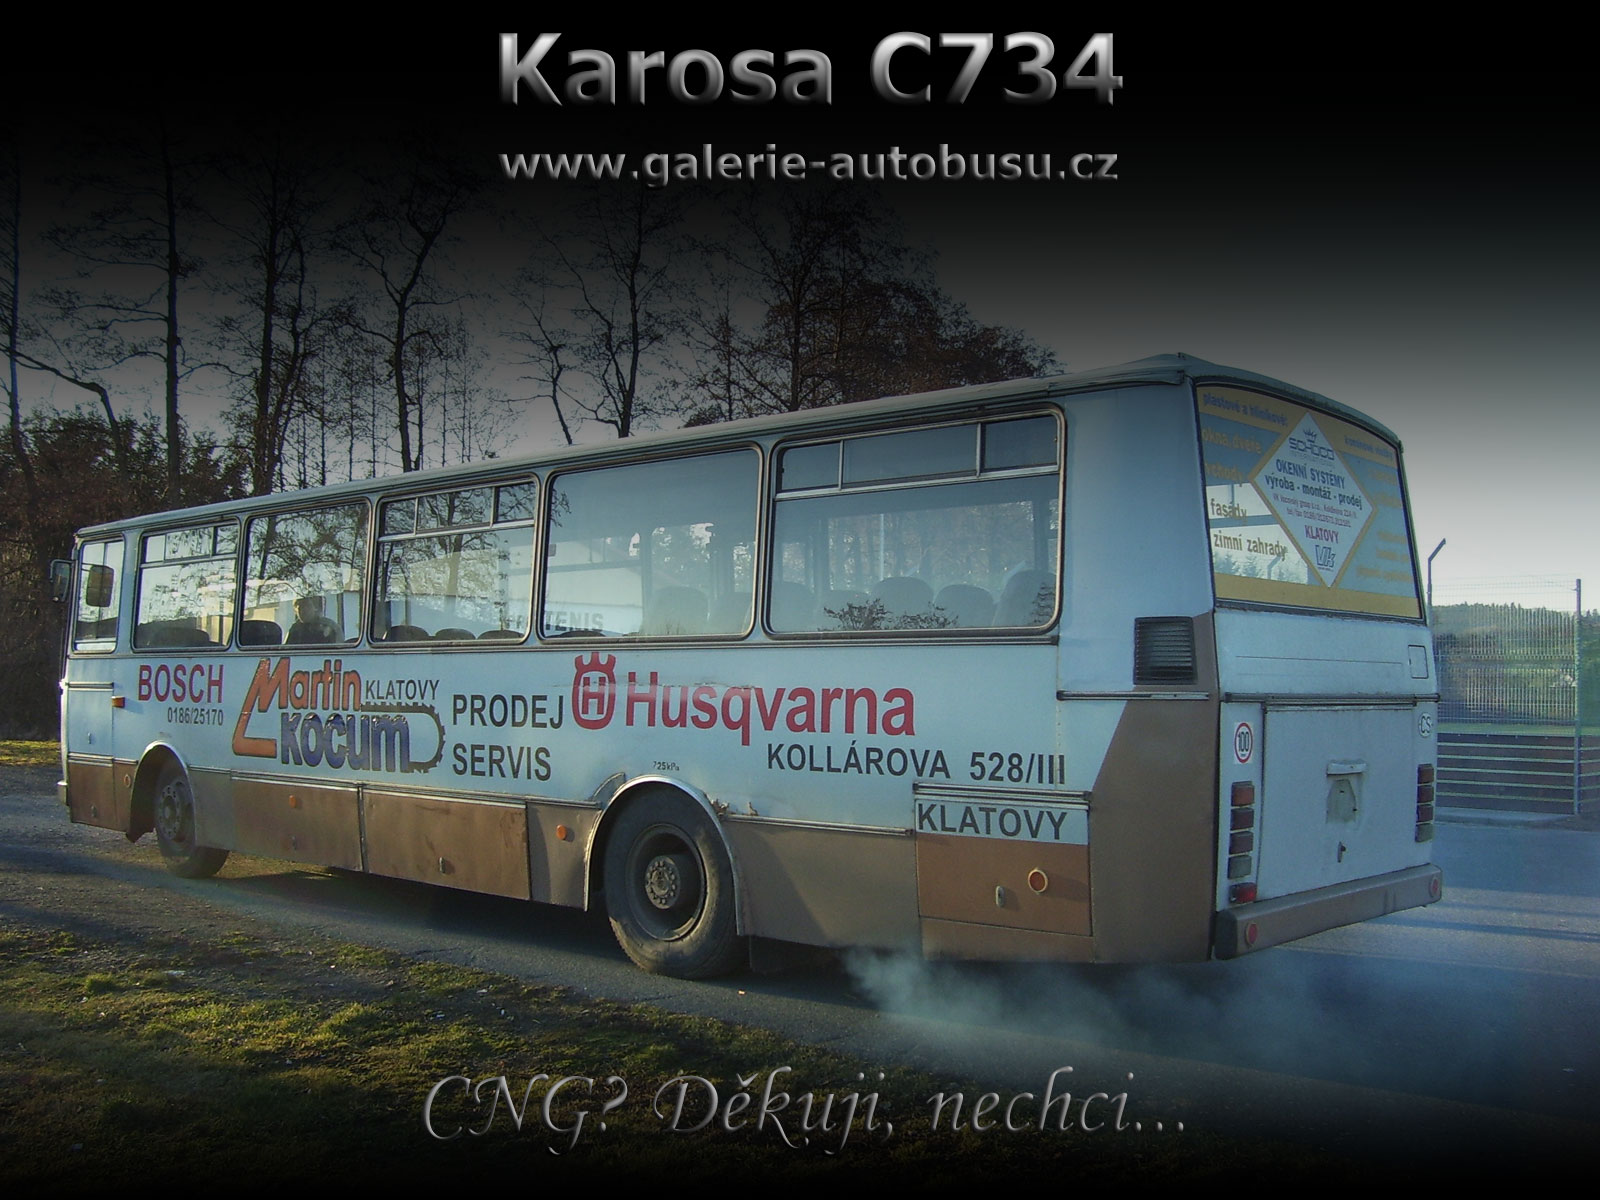 Karina C734